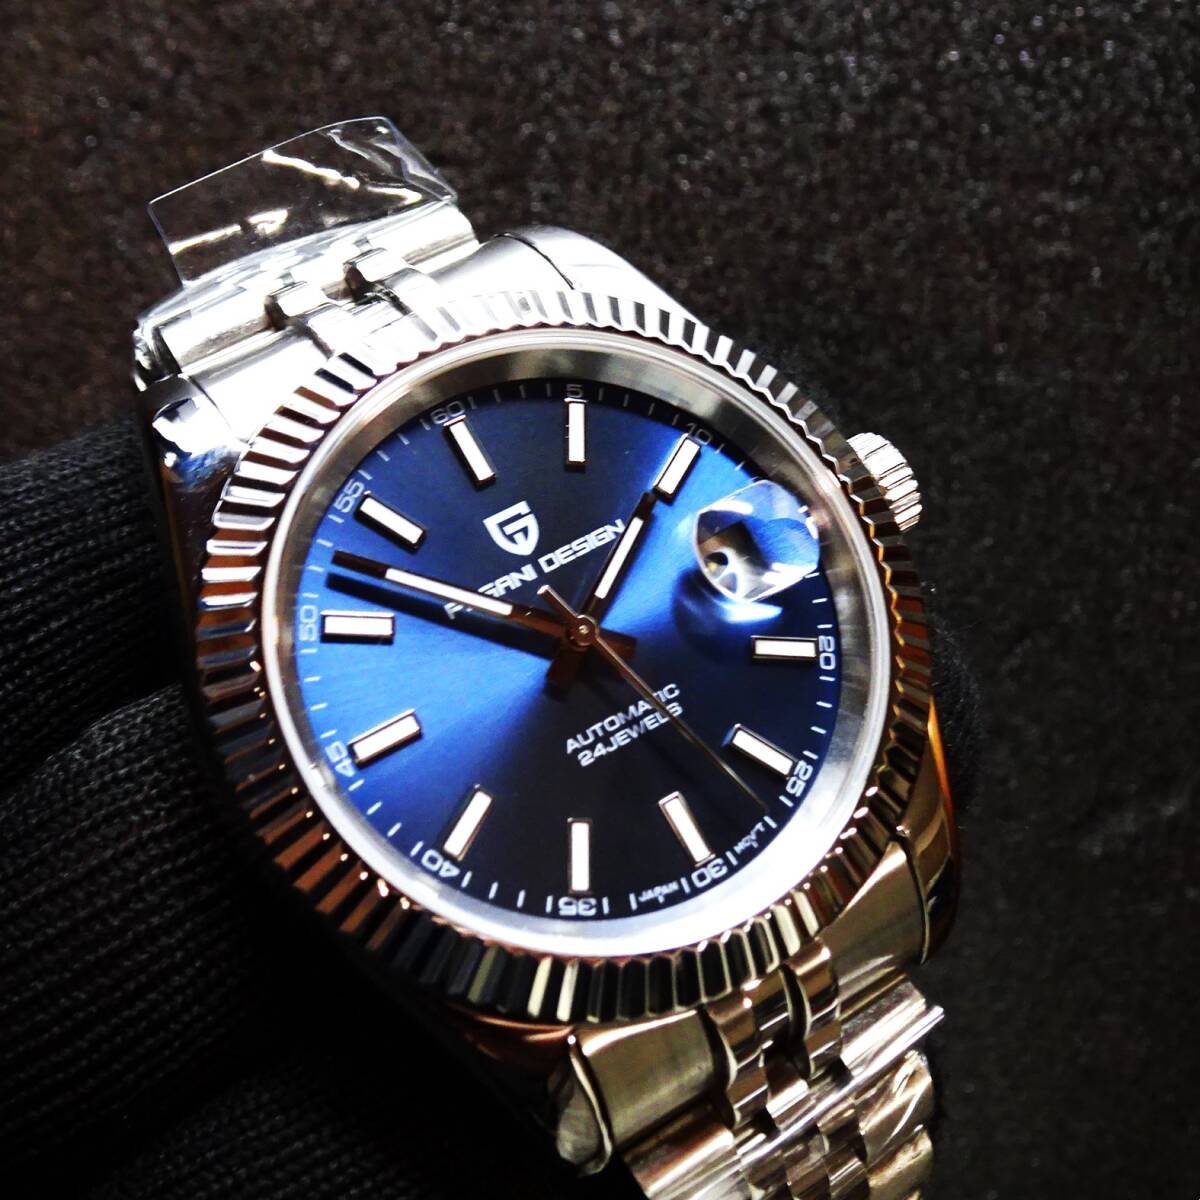 送料無料・新品〓 PAGANI DESIGN・パガーニデザイン・オマージュウォッチ腕時計 機械式NH35Ａ・ PD-1645・315Lフルステンレス製・ブルー